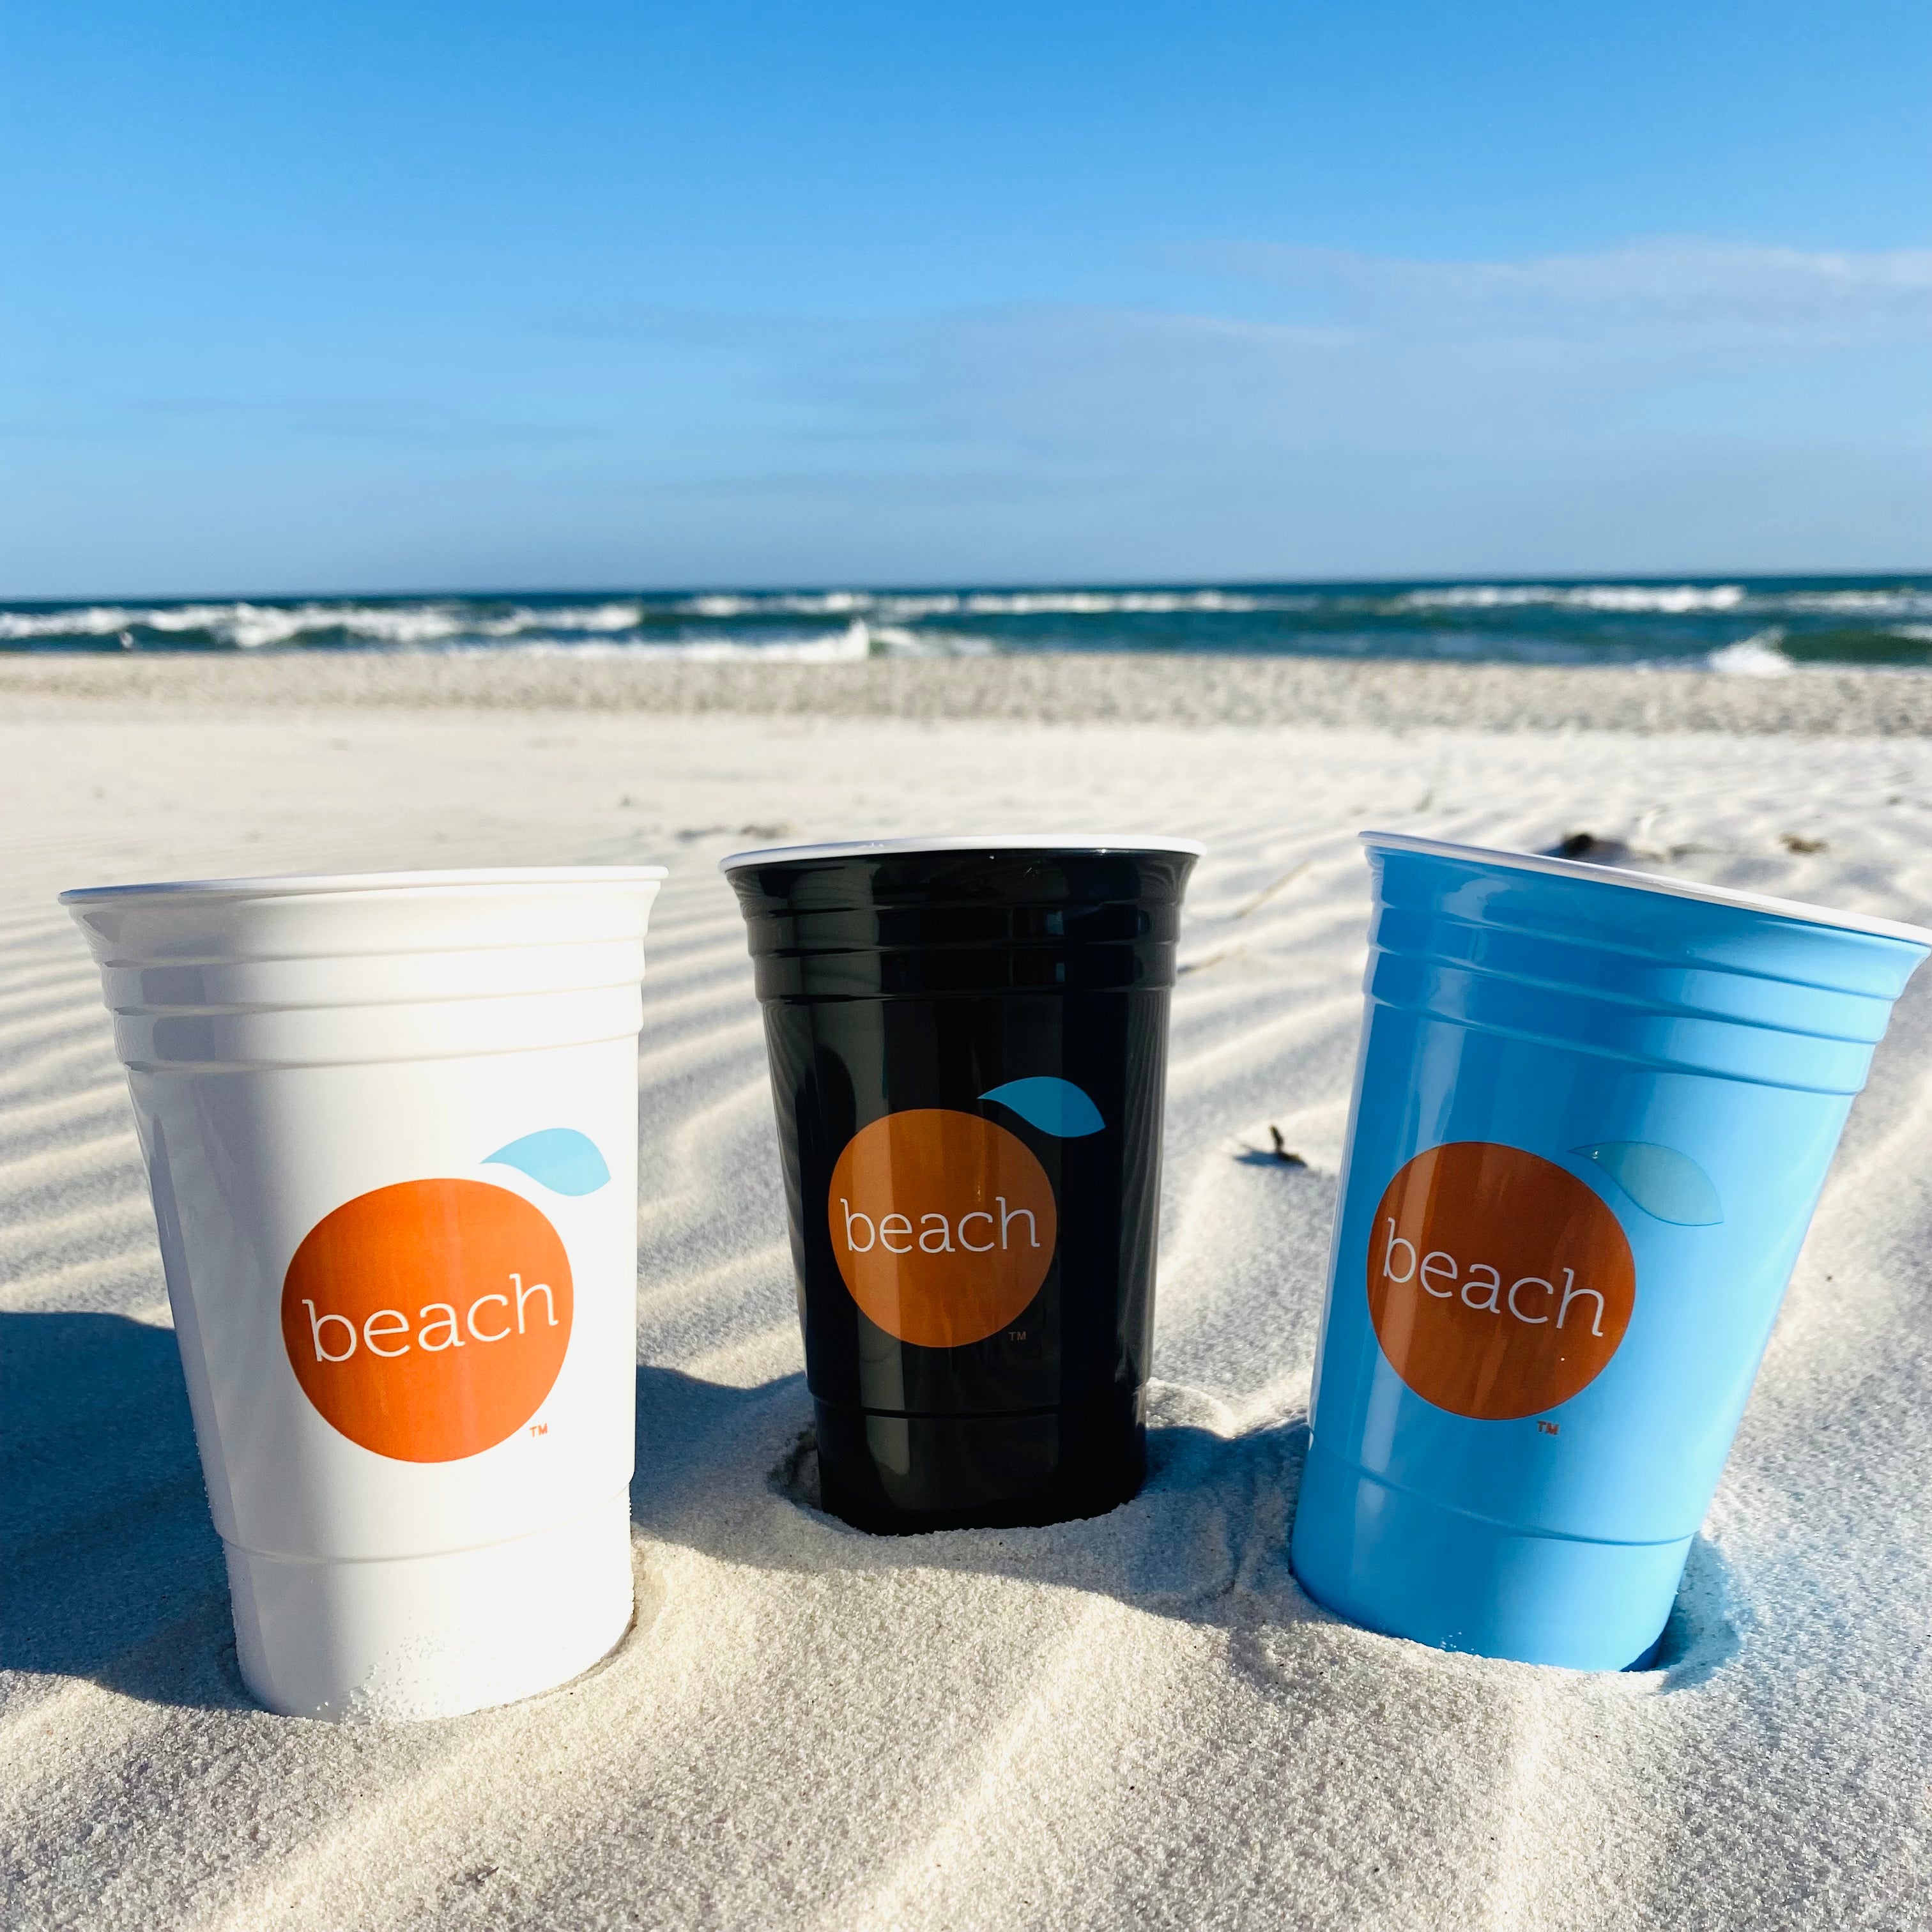 Orange Beach Solo Cup